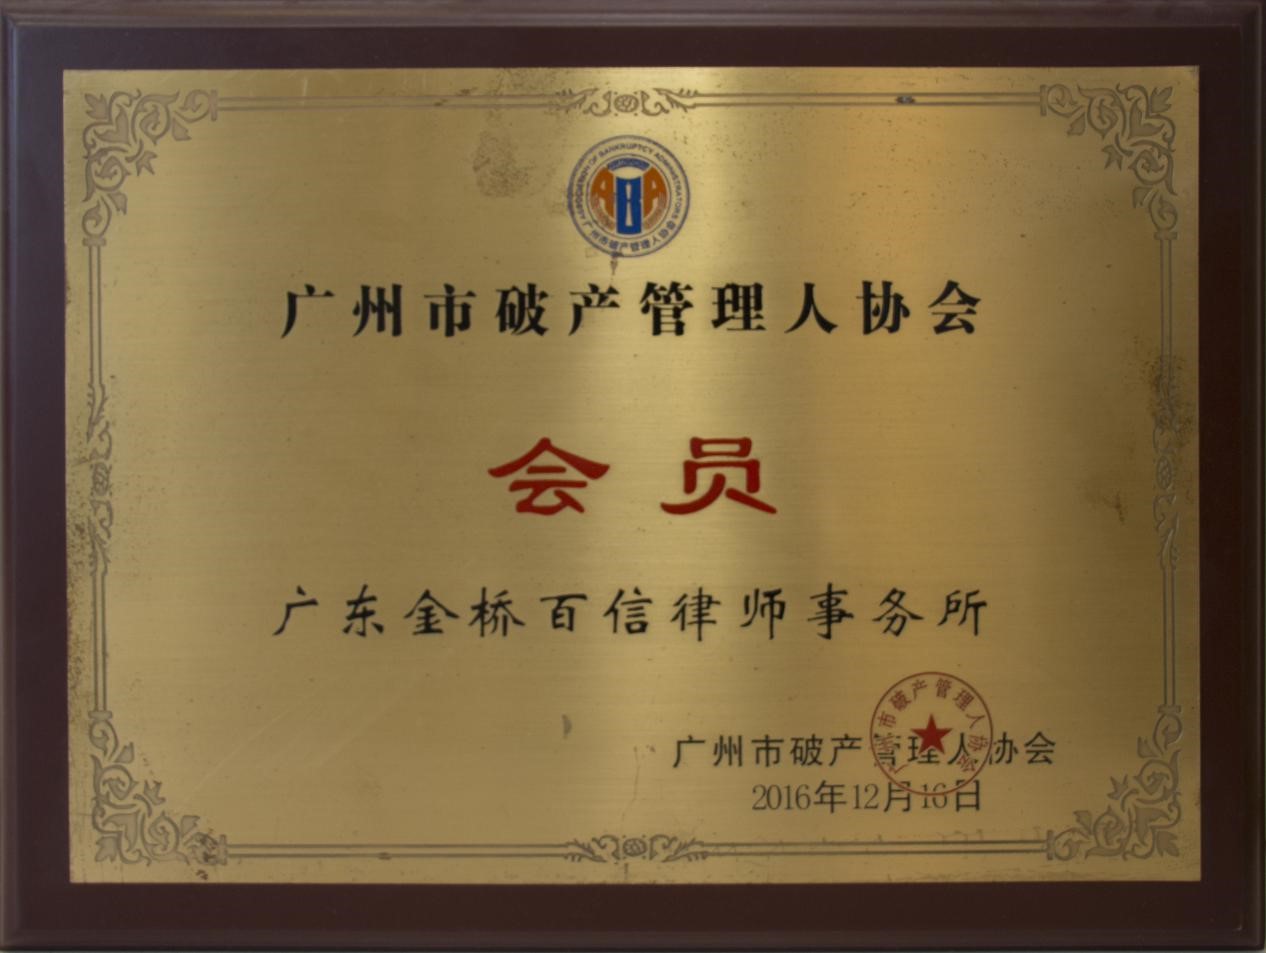 2016年12月本所成为广州市破产管理人协会会员单位